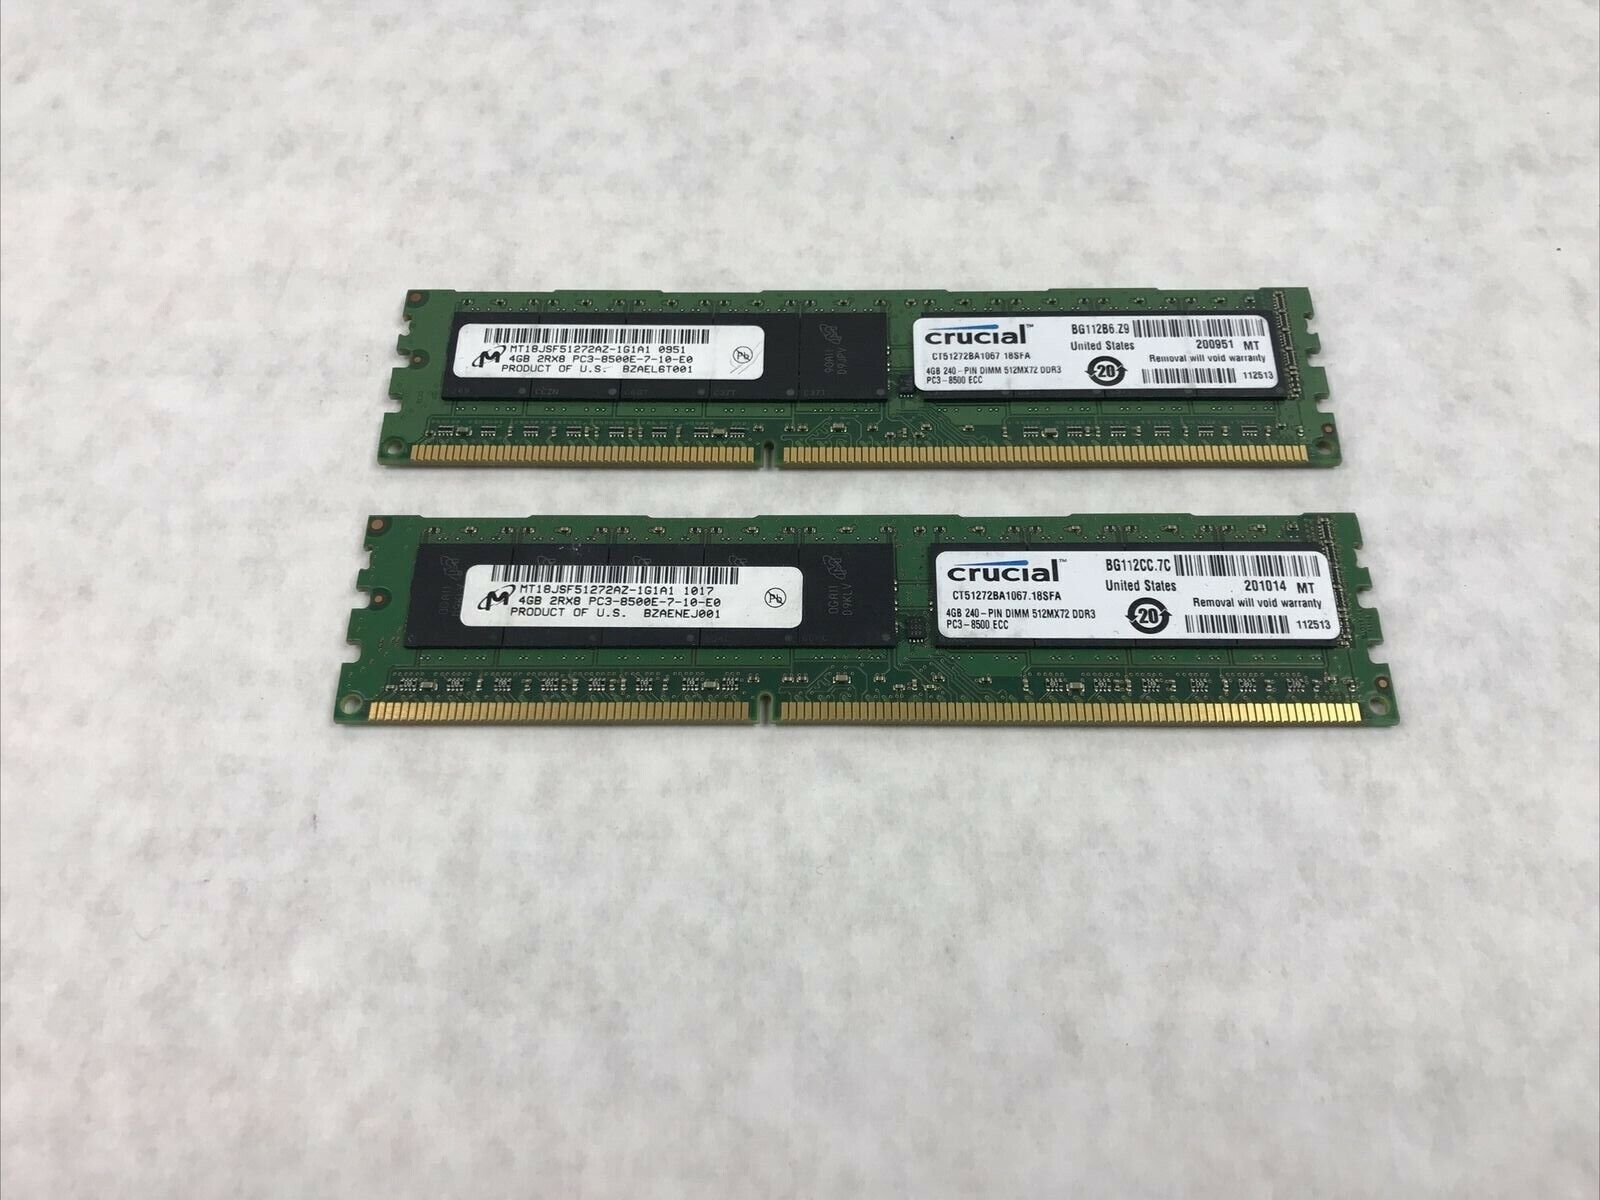 8GB Kit 4GBx2 2RX8 PC3-8500E RAM